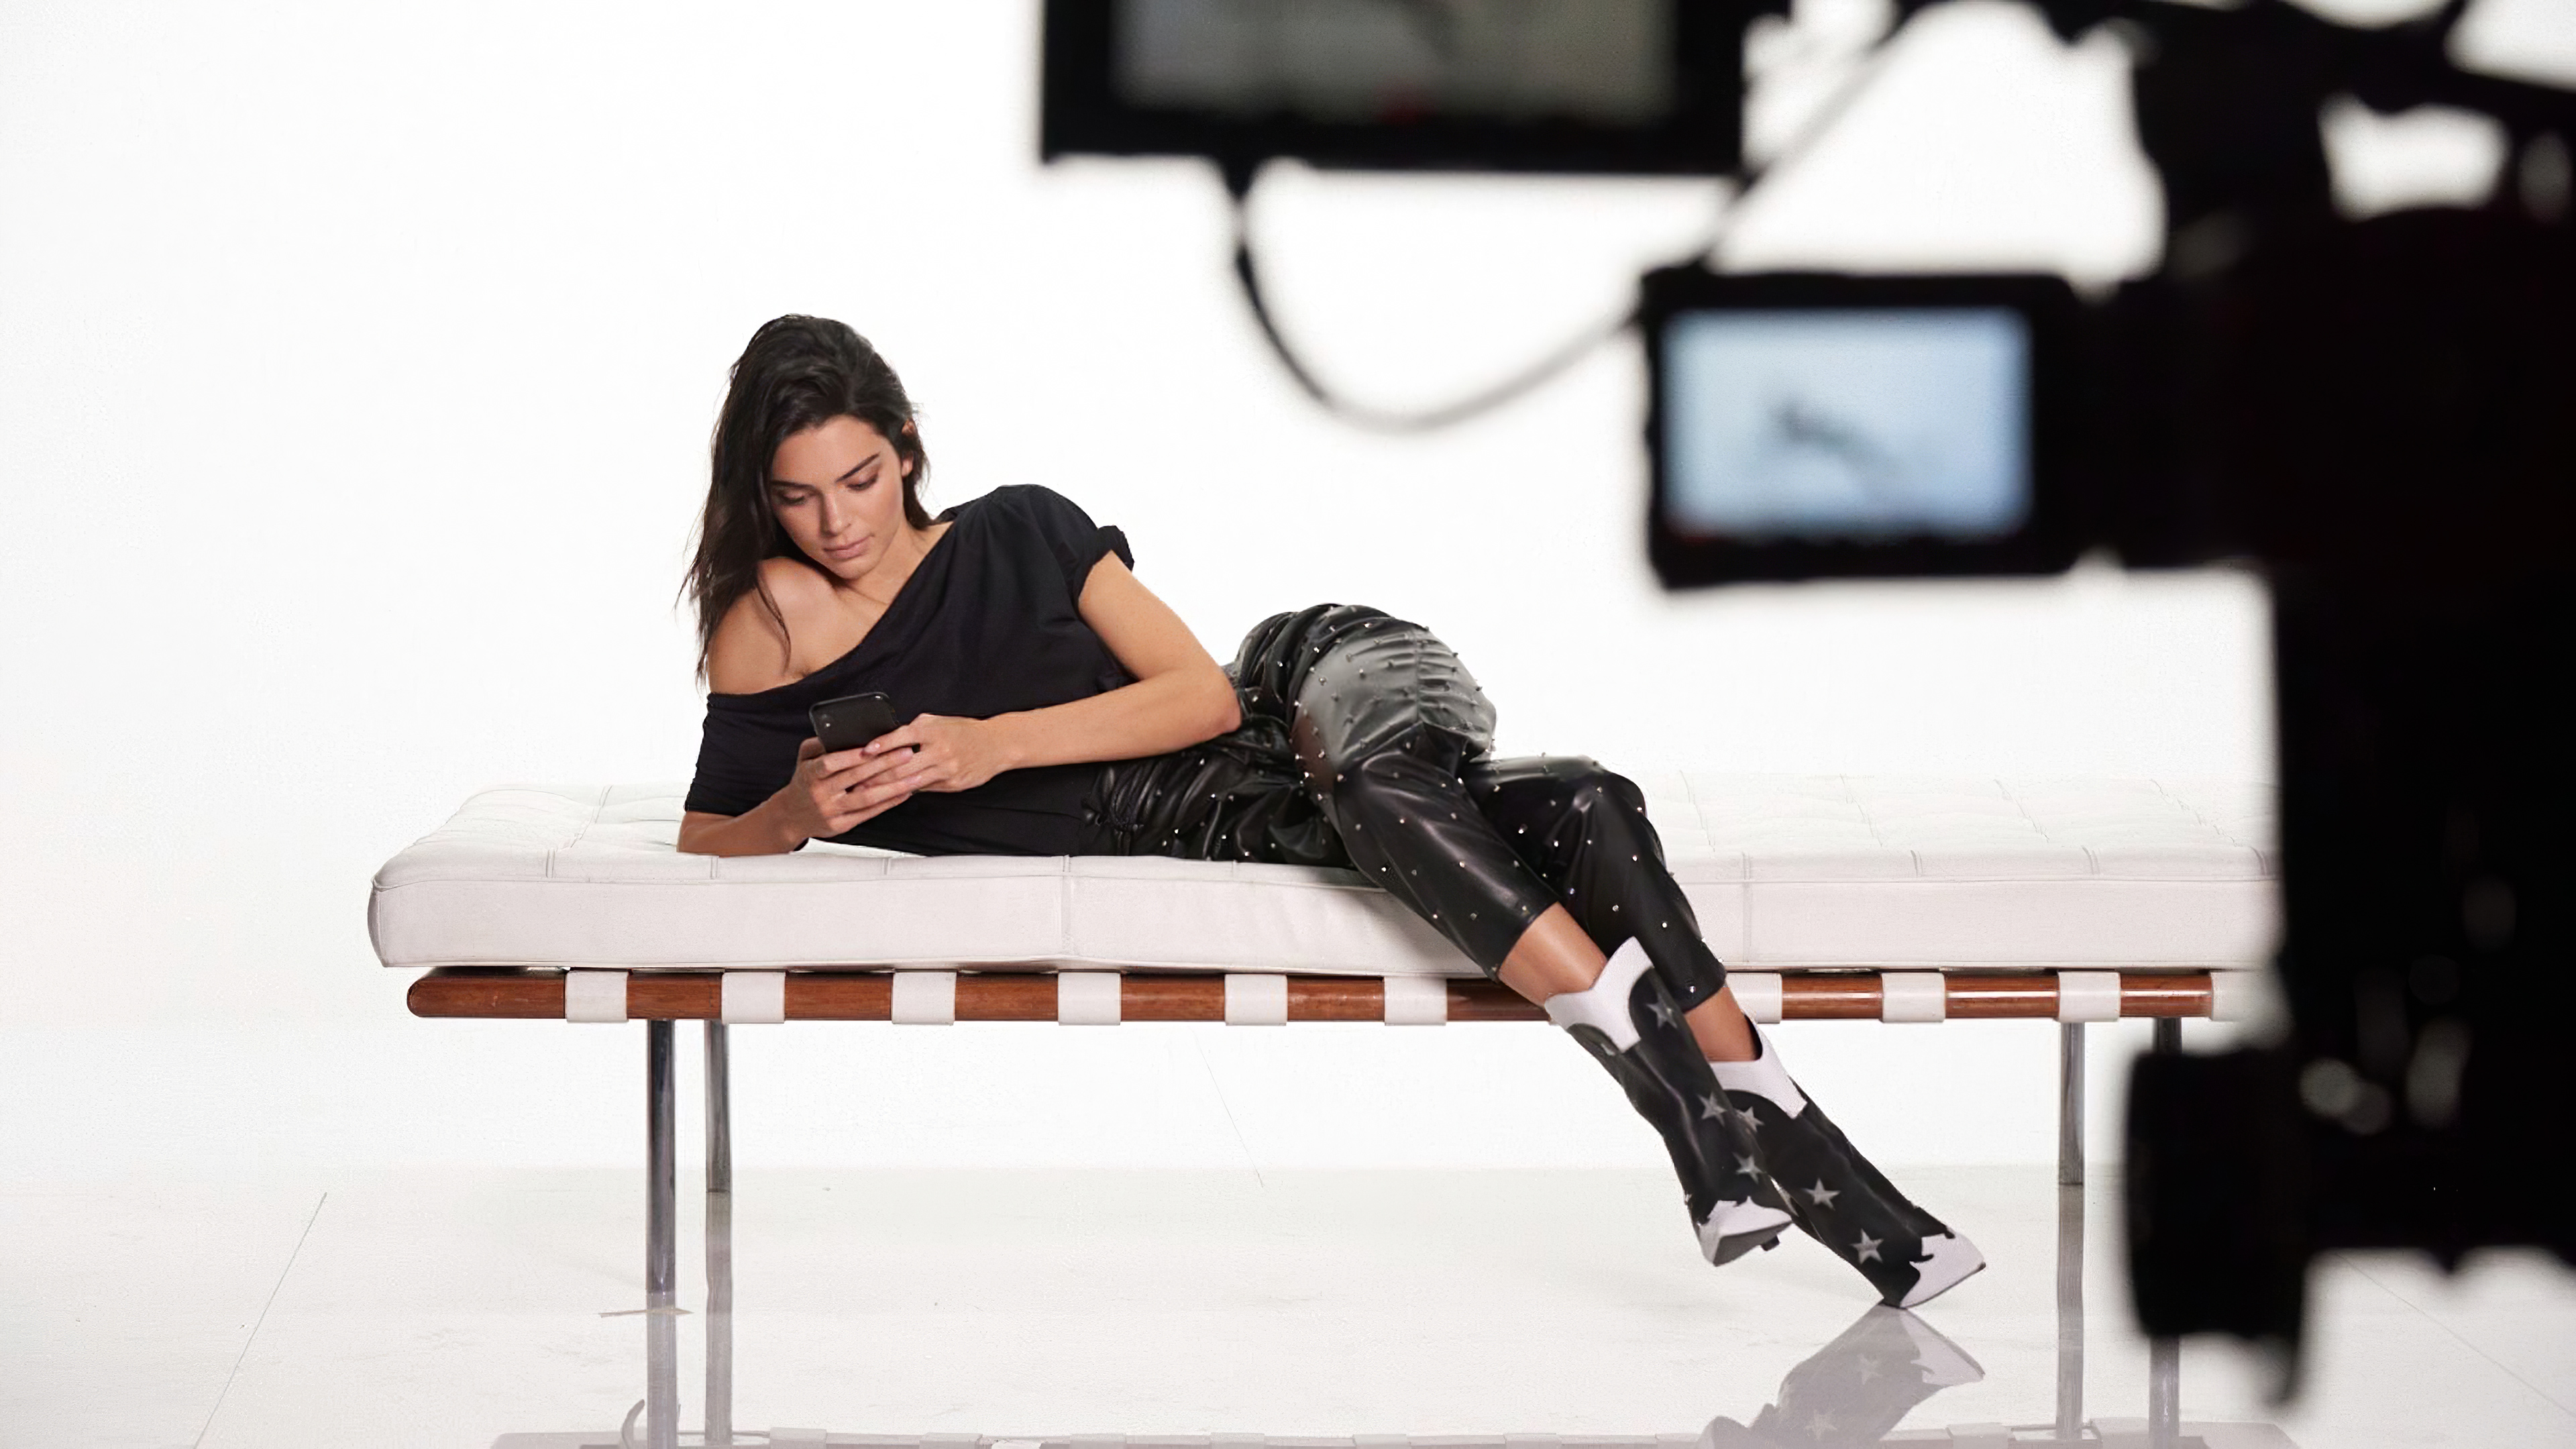 Zastaki.com - Американская модель Кендалл Дженнер лежит с телефоном